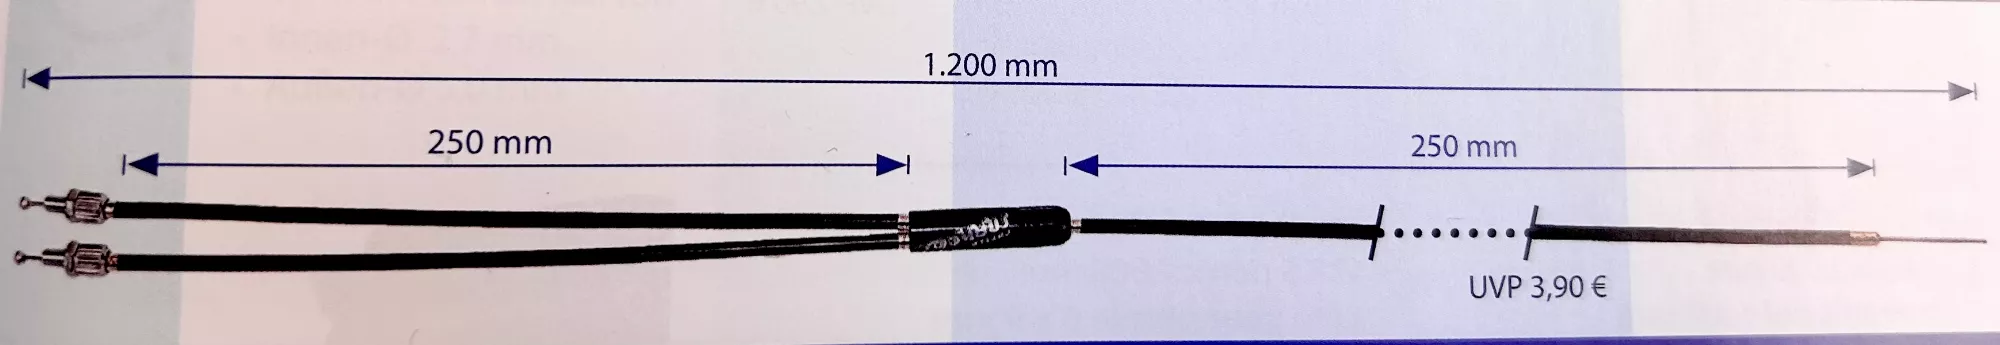 Cable de freno BMX para rotor 1200mm